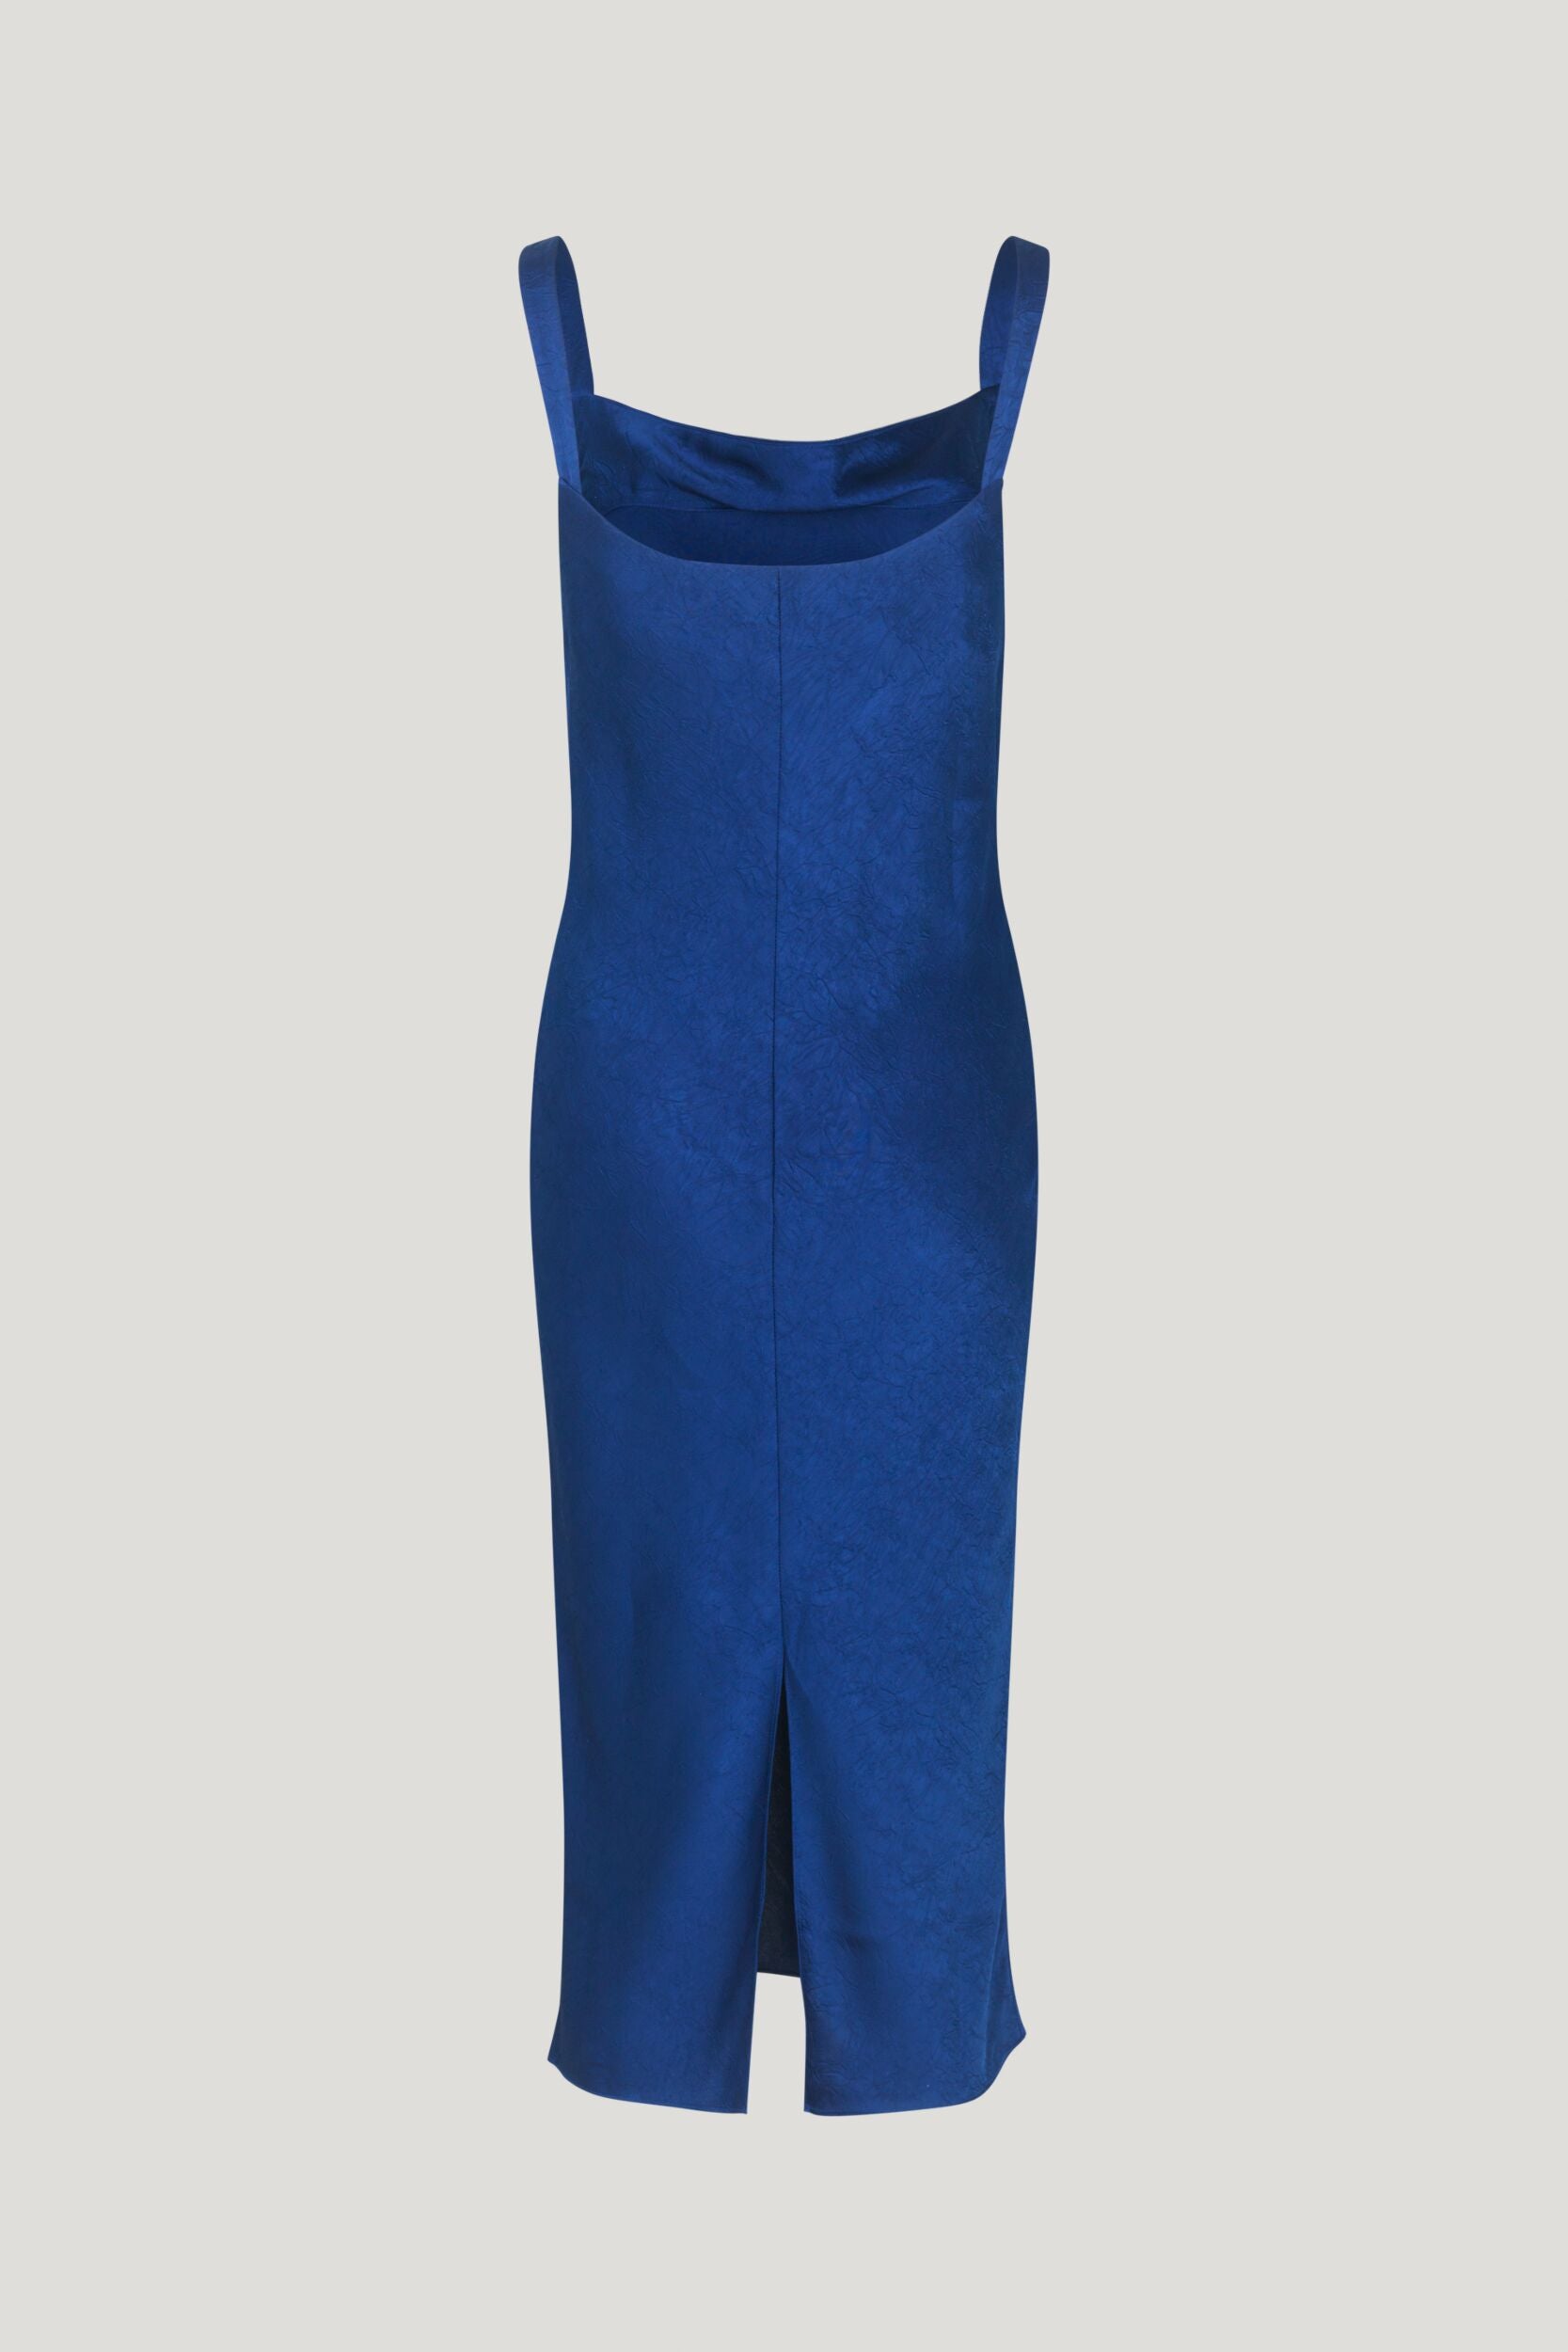 Baum & Pferdgarten agamora blue dress